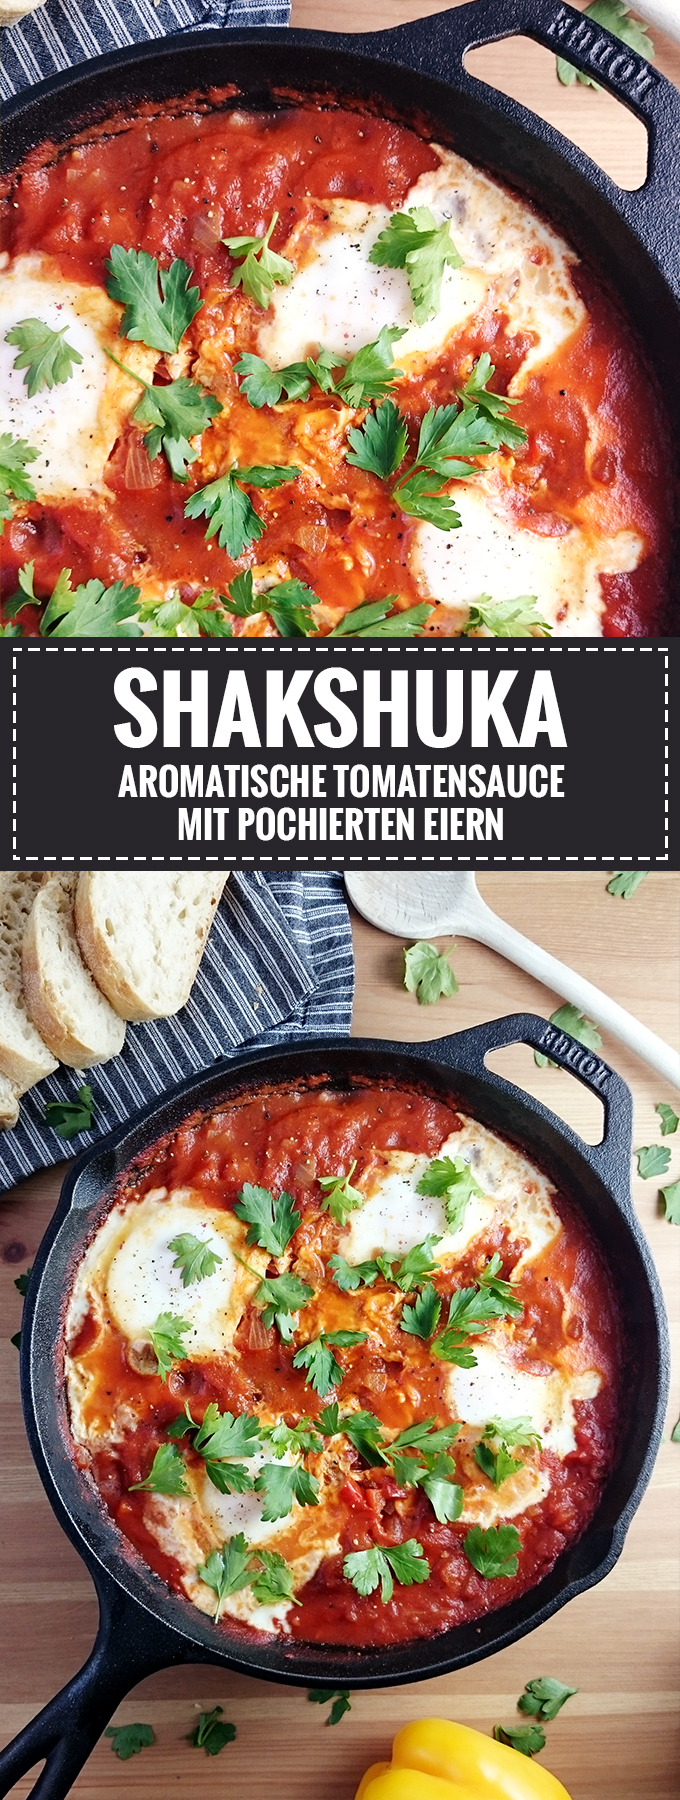 Shakshuka – Aromatische Tomatensauce mit pochierten Eiern // Rezept auf Knabberkult.de